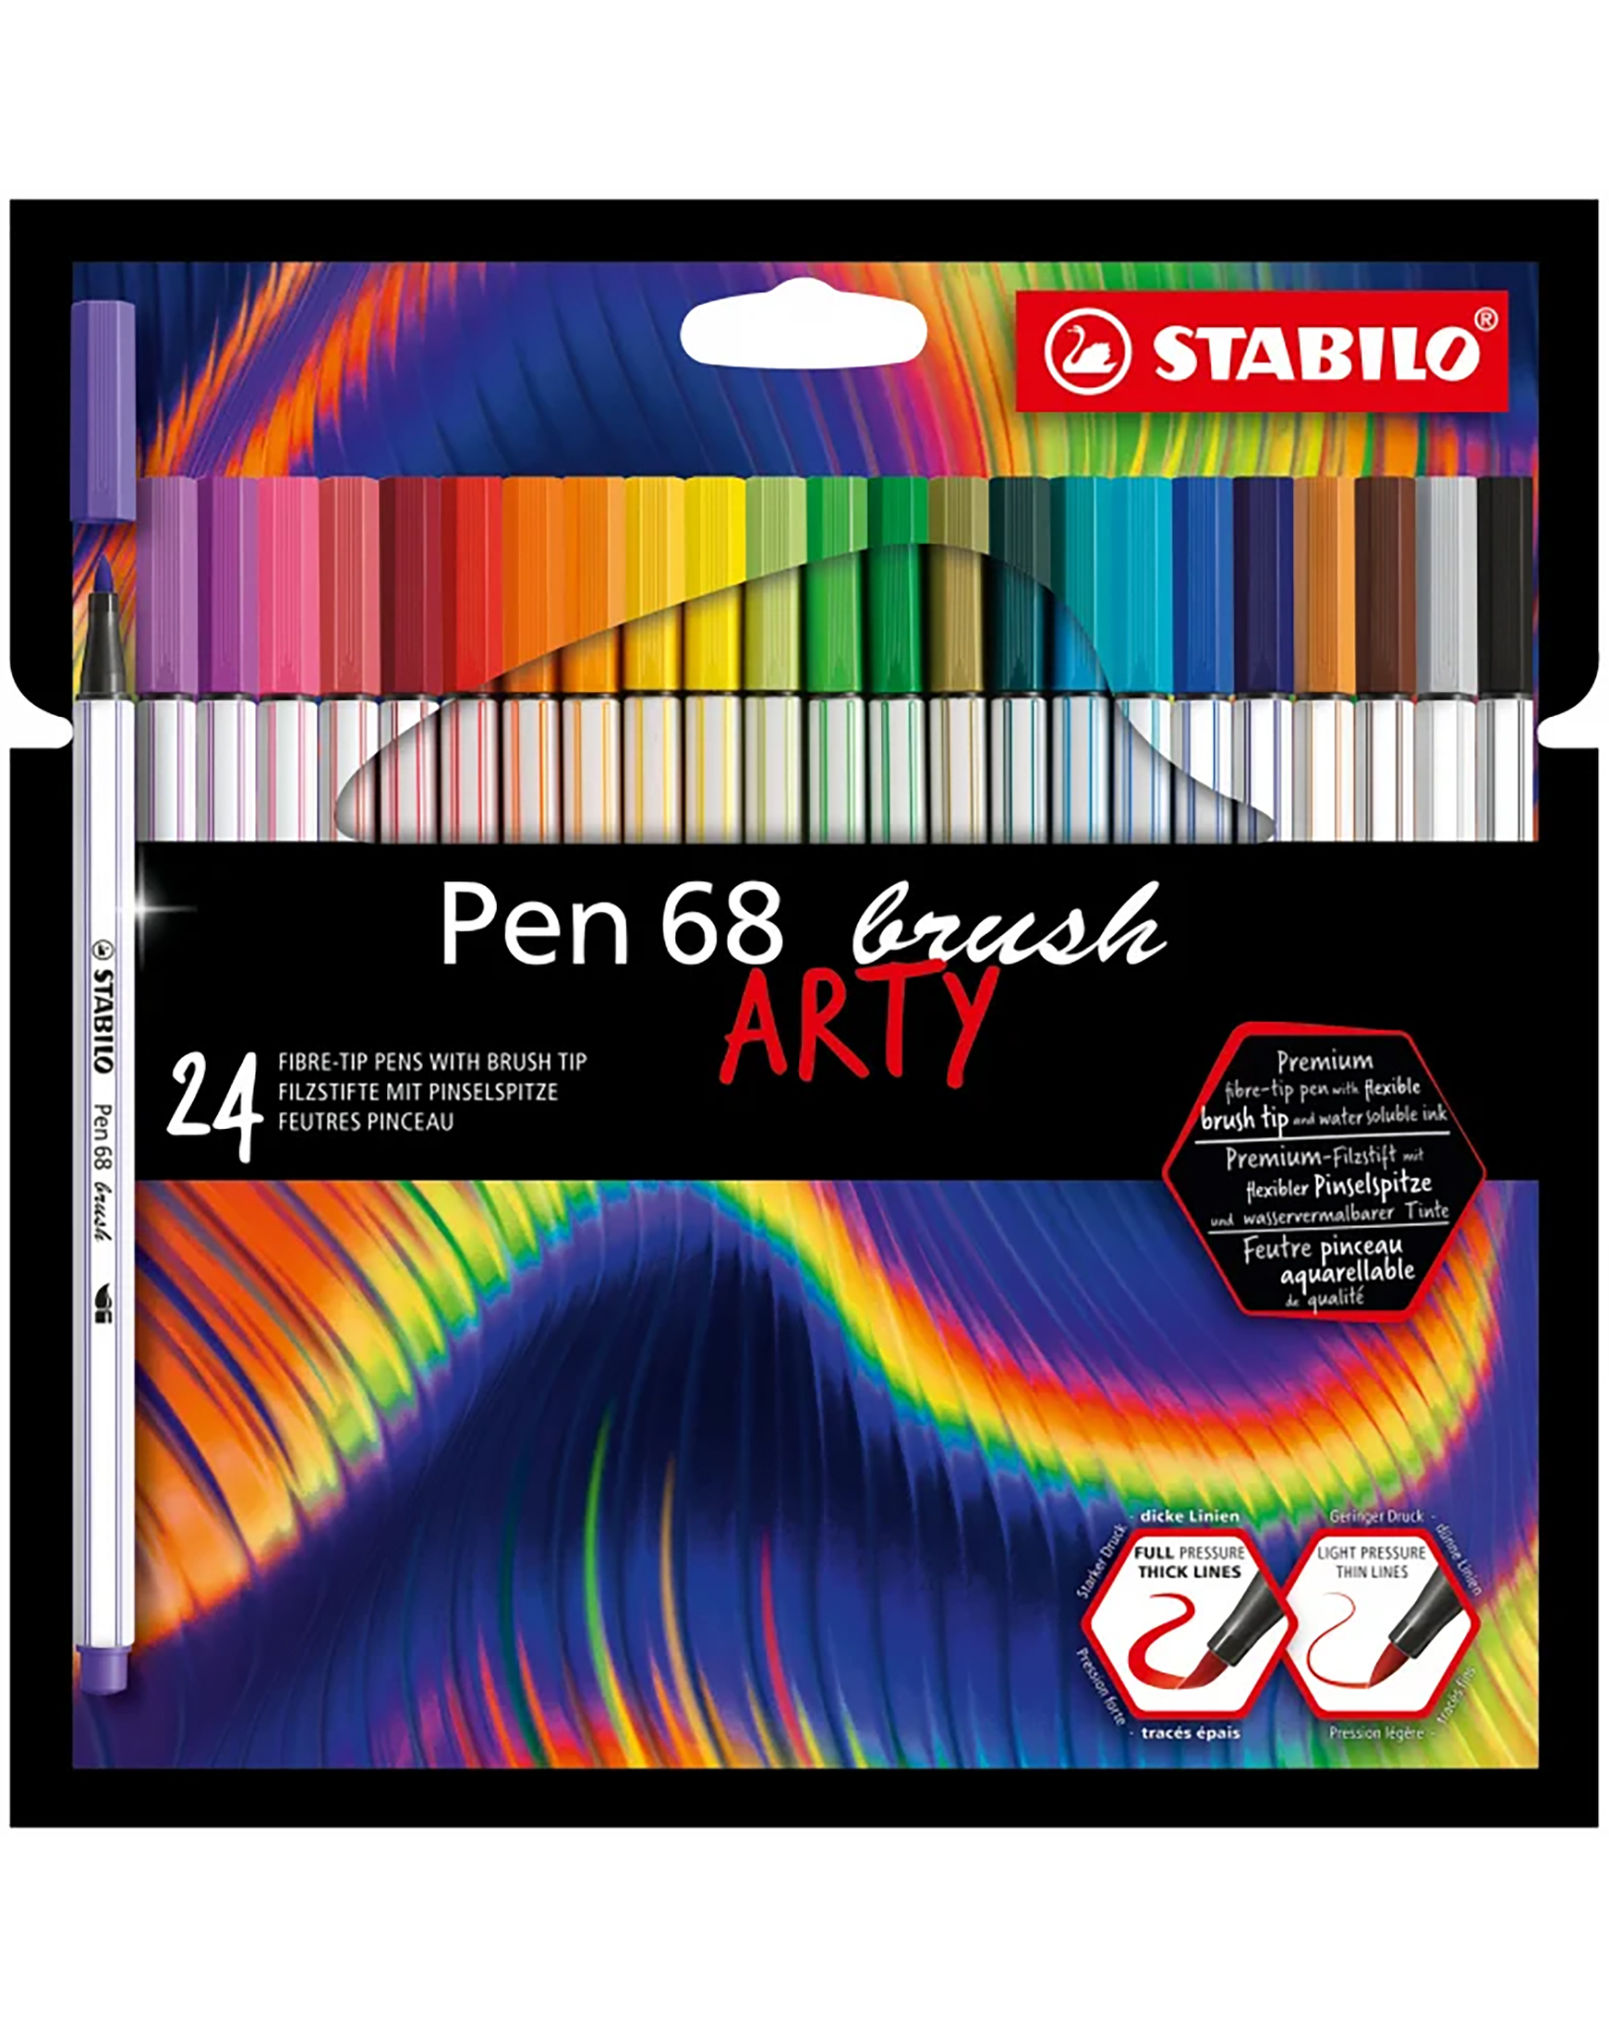 Filzstift STABILO® Pen 68 BRUSH ARTY mit 24 Farben kaufen